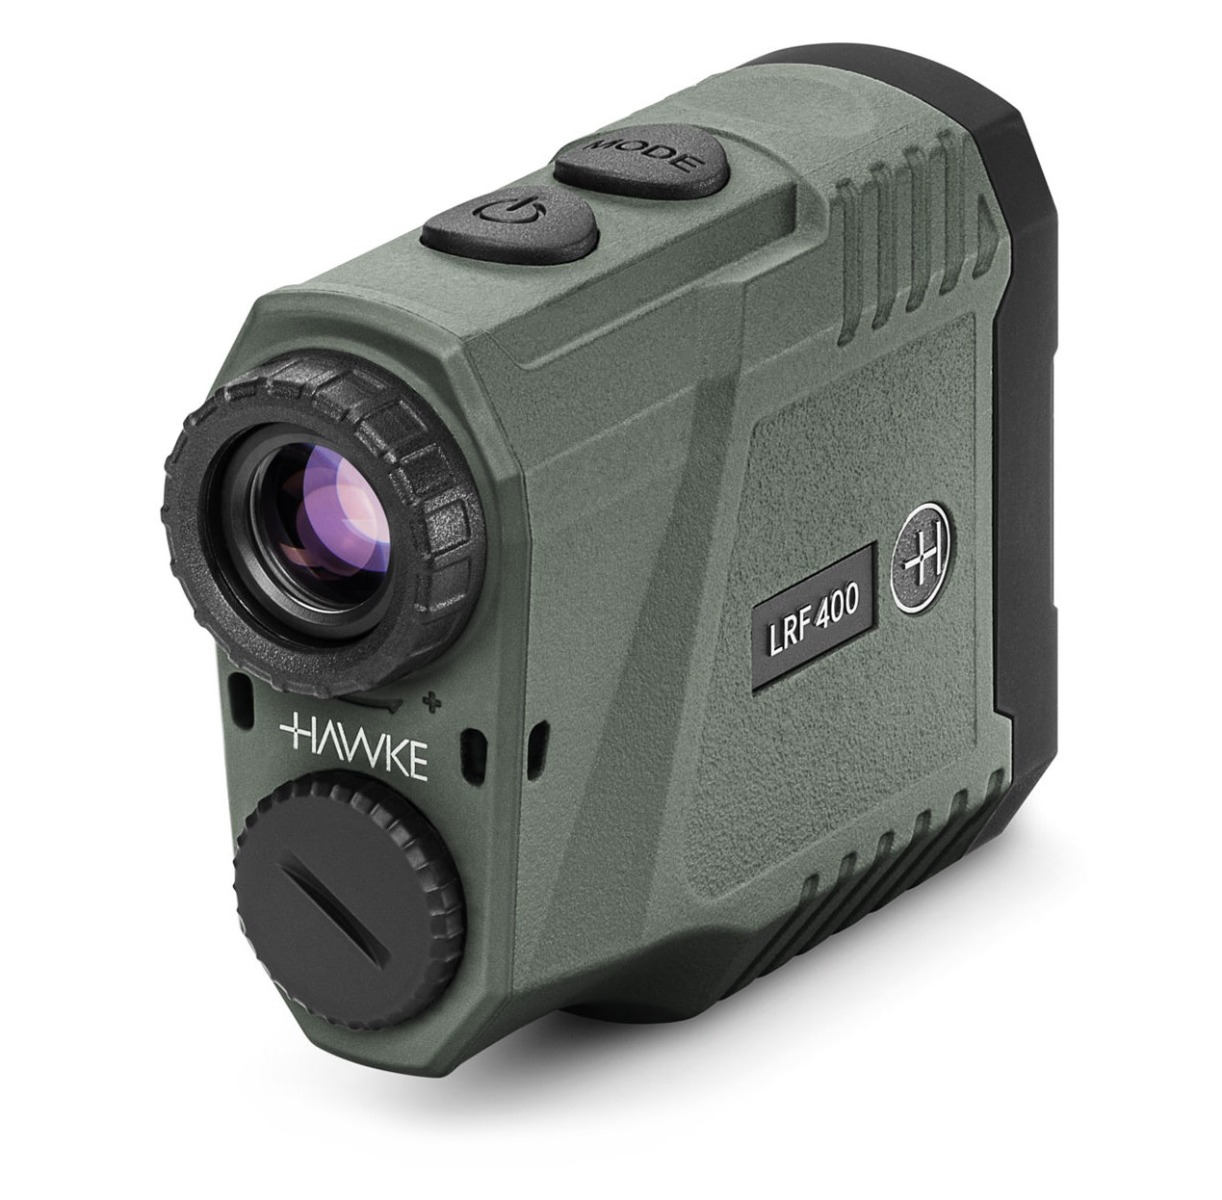 hawke lrf 400 laser range finder